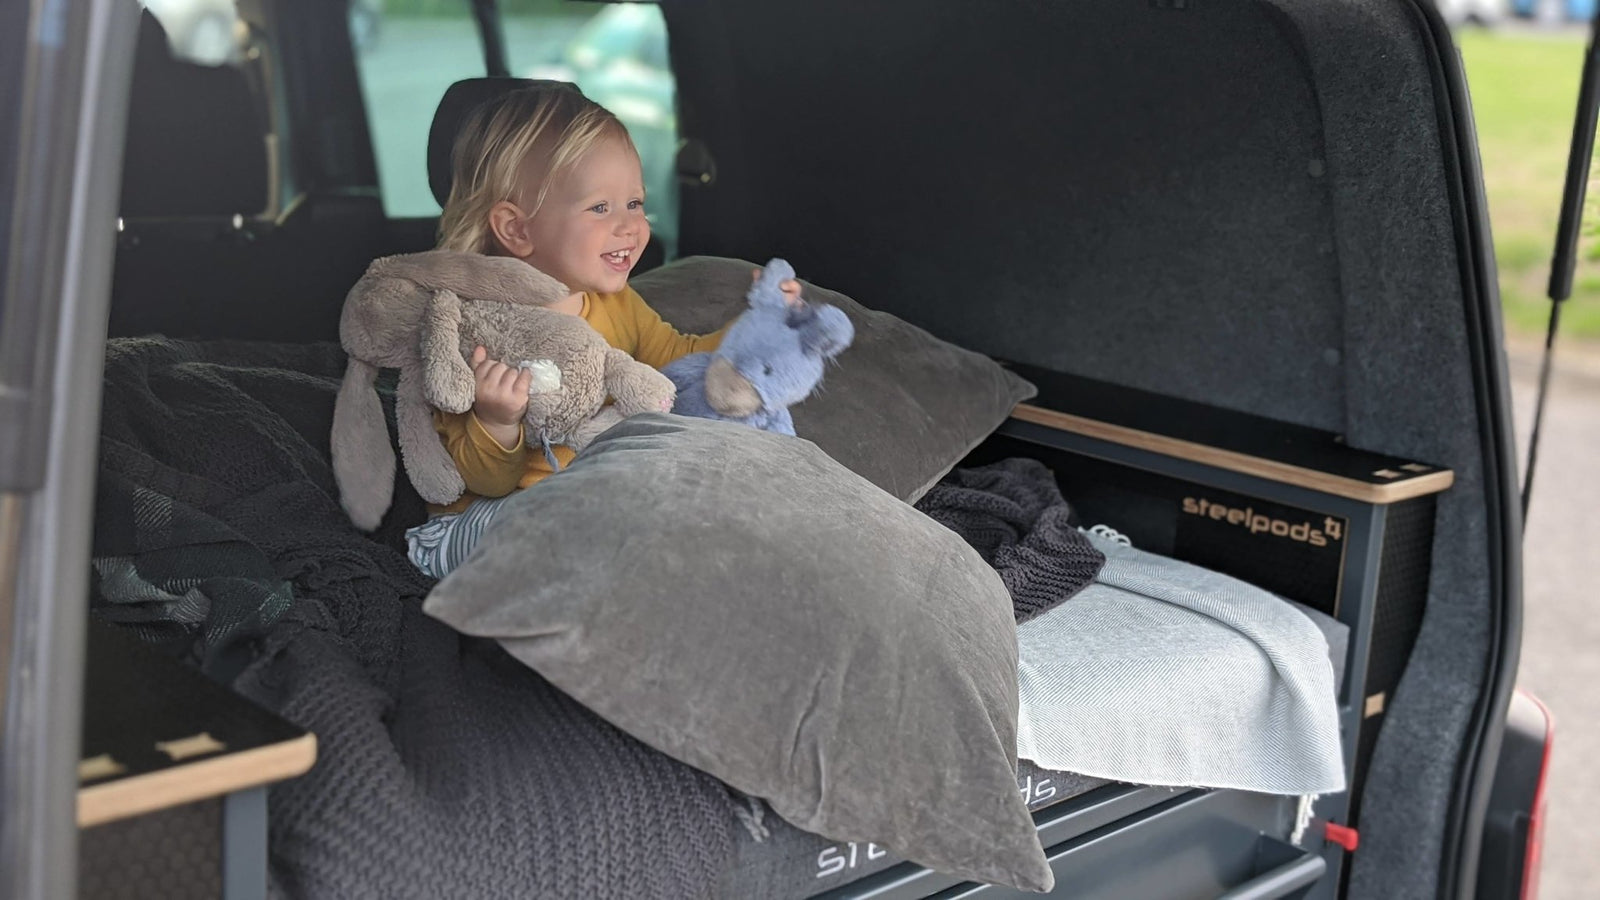 Introducing the SteelPod Campervan Bed | SteelPods